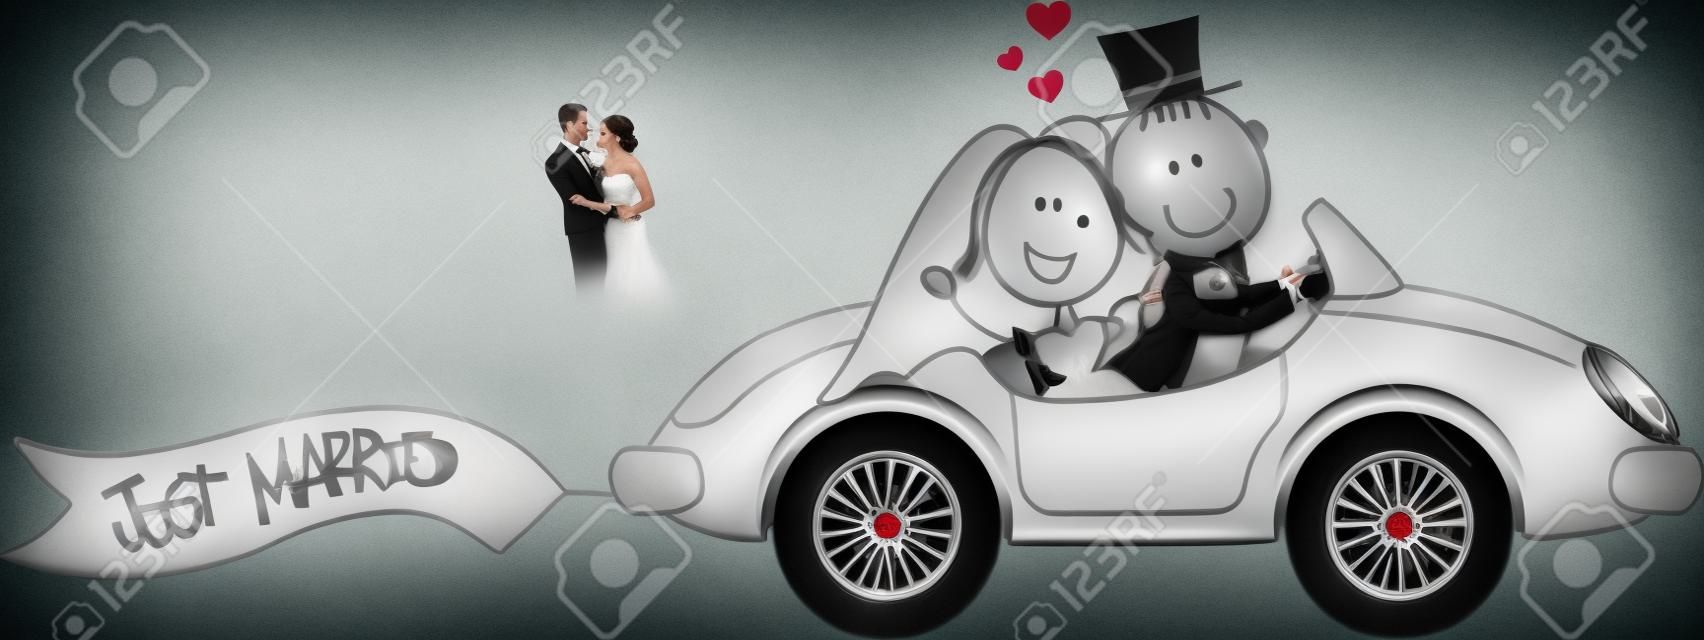 bruid en bruidegom op auto geïsoleerd op witte achtergrond